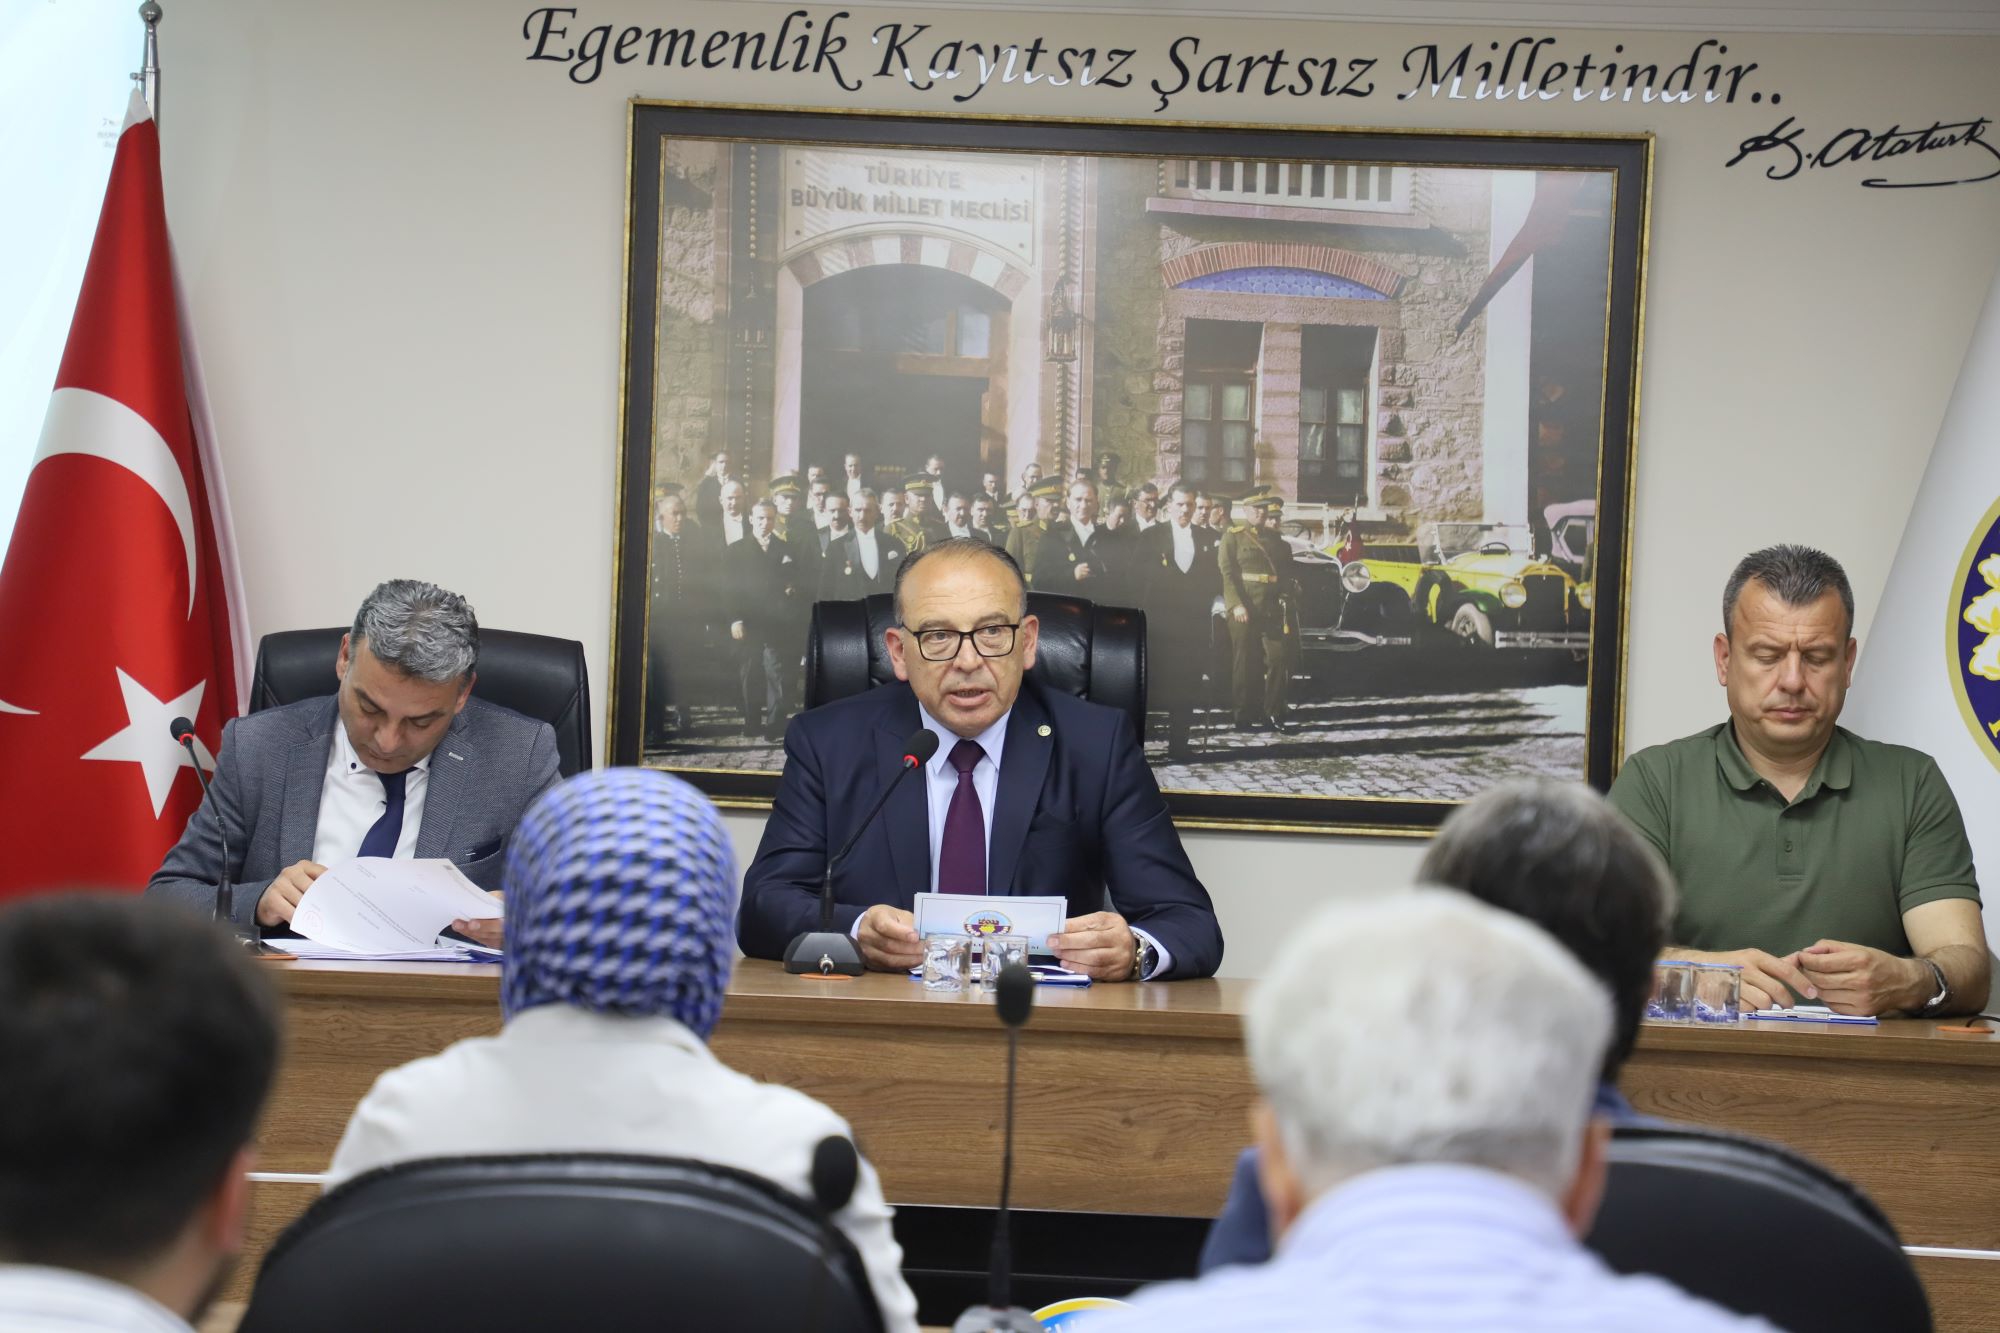 Turgutlu Belediyesi Meclisinden Seçimler Öncesinde Sağduyu Çağrısı